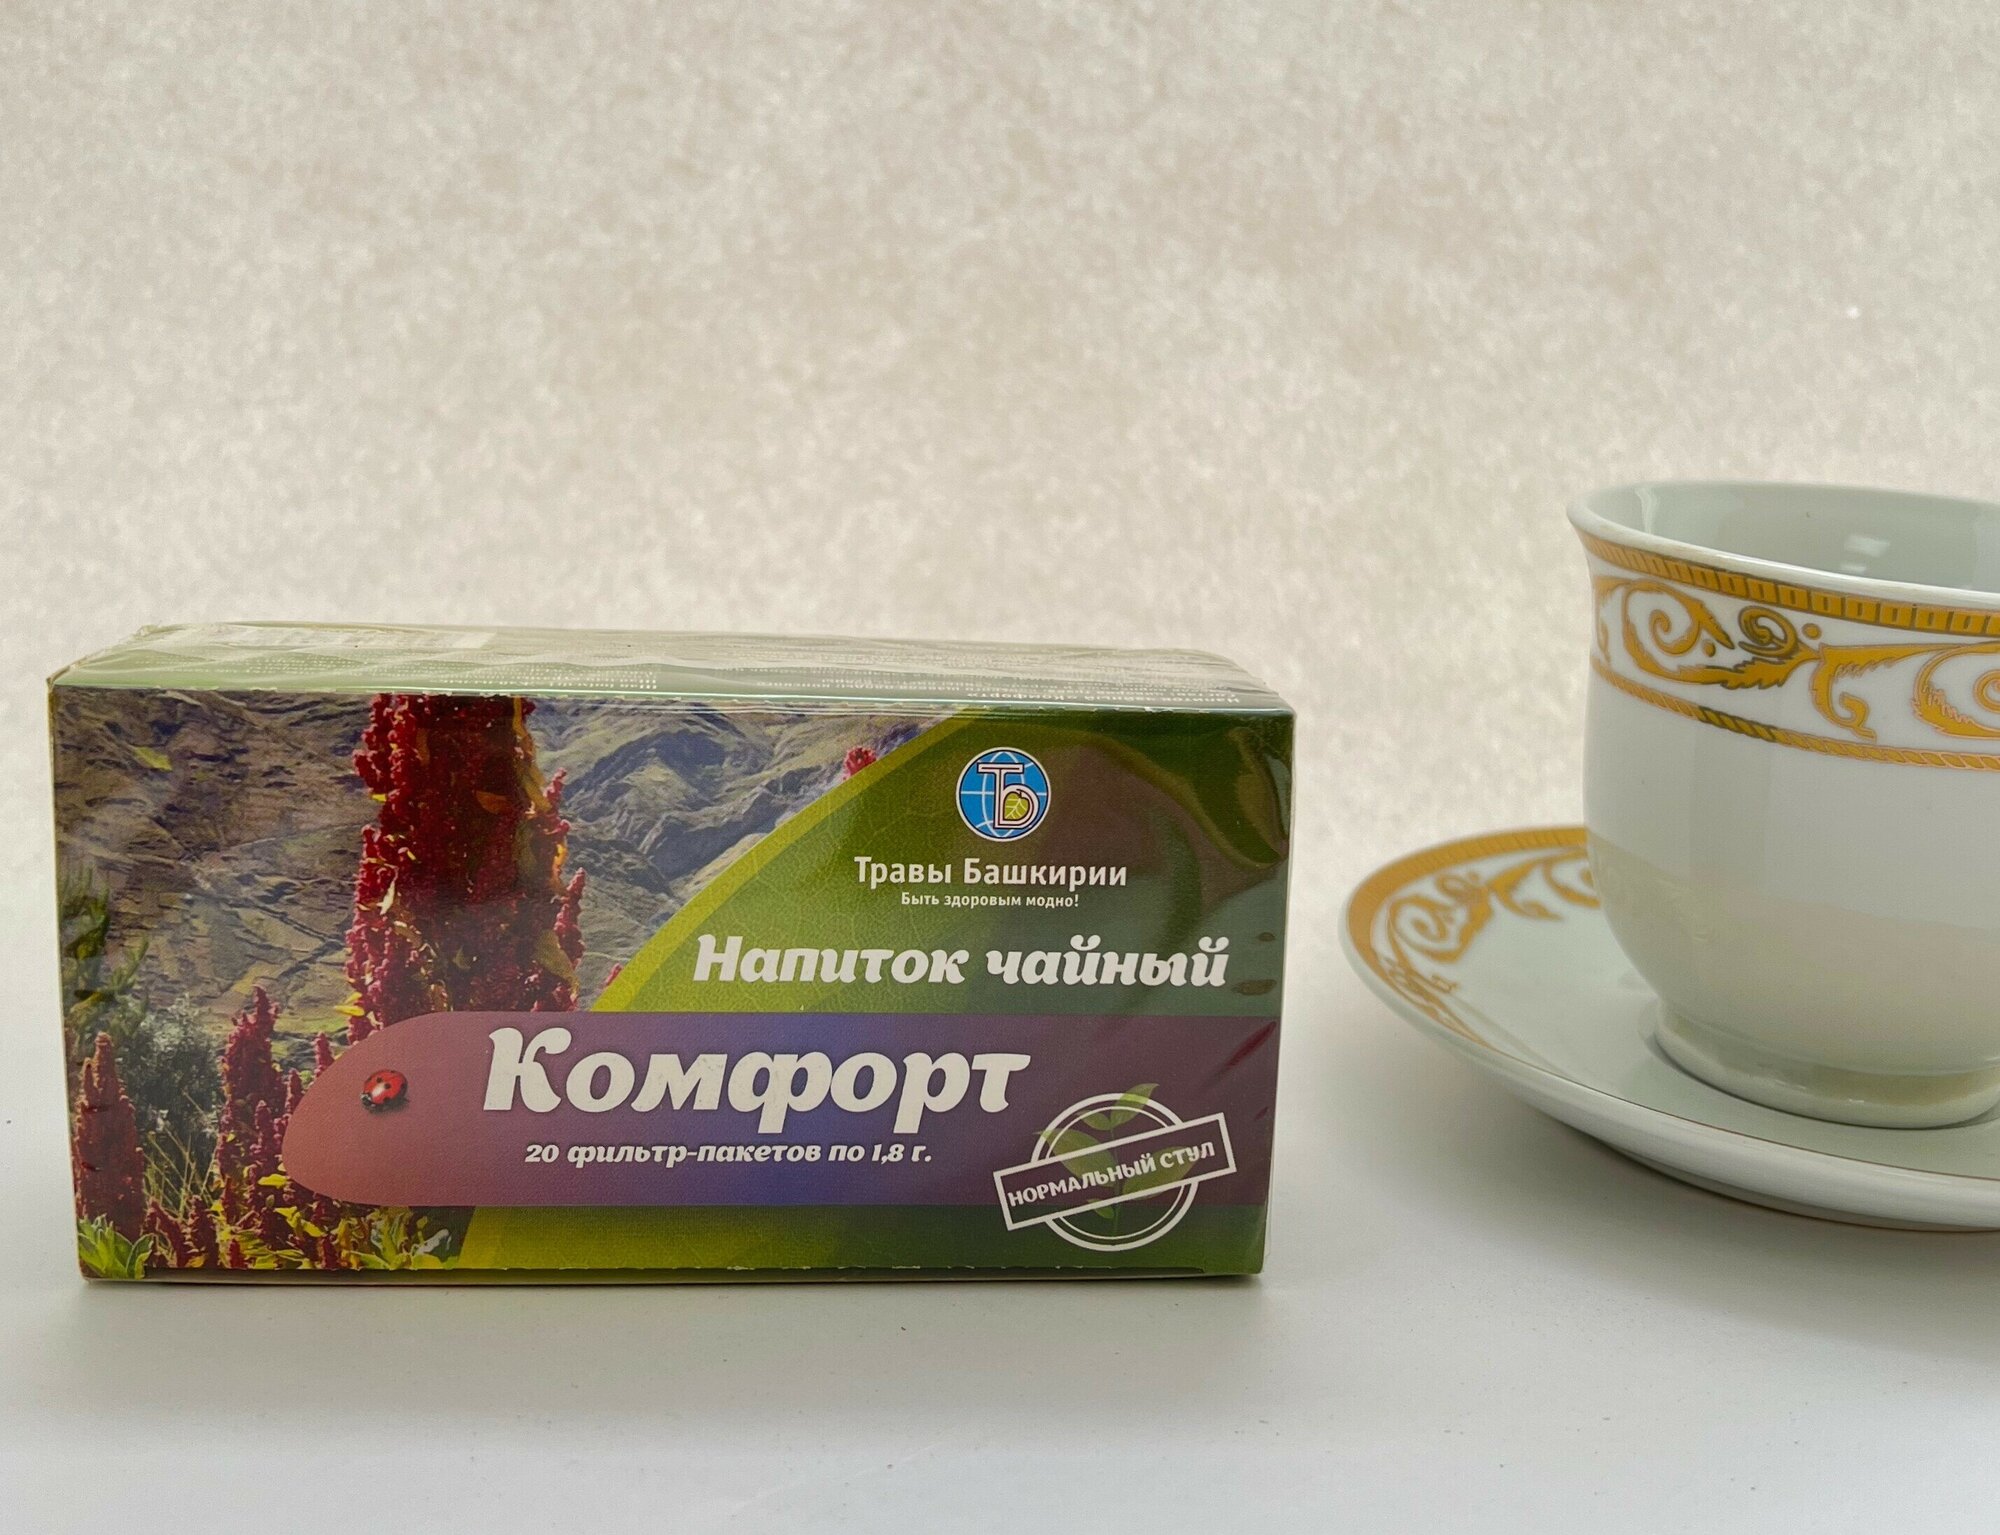 Напиток чайный "Комфорт", Травы Башкирии, 20 фильтр пакетов по 1,8 гр. - фотография № 1